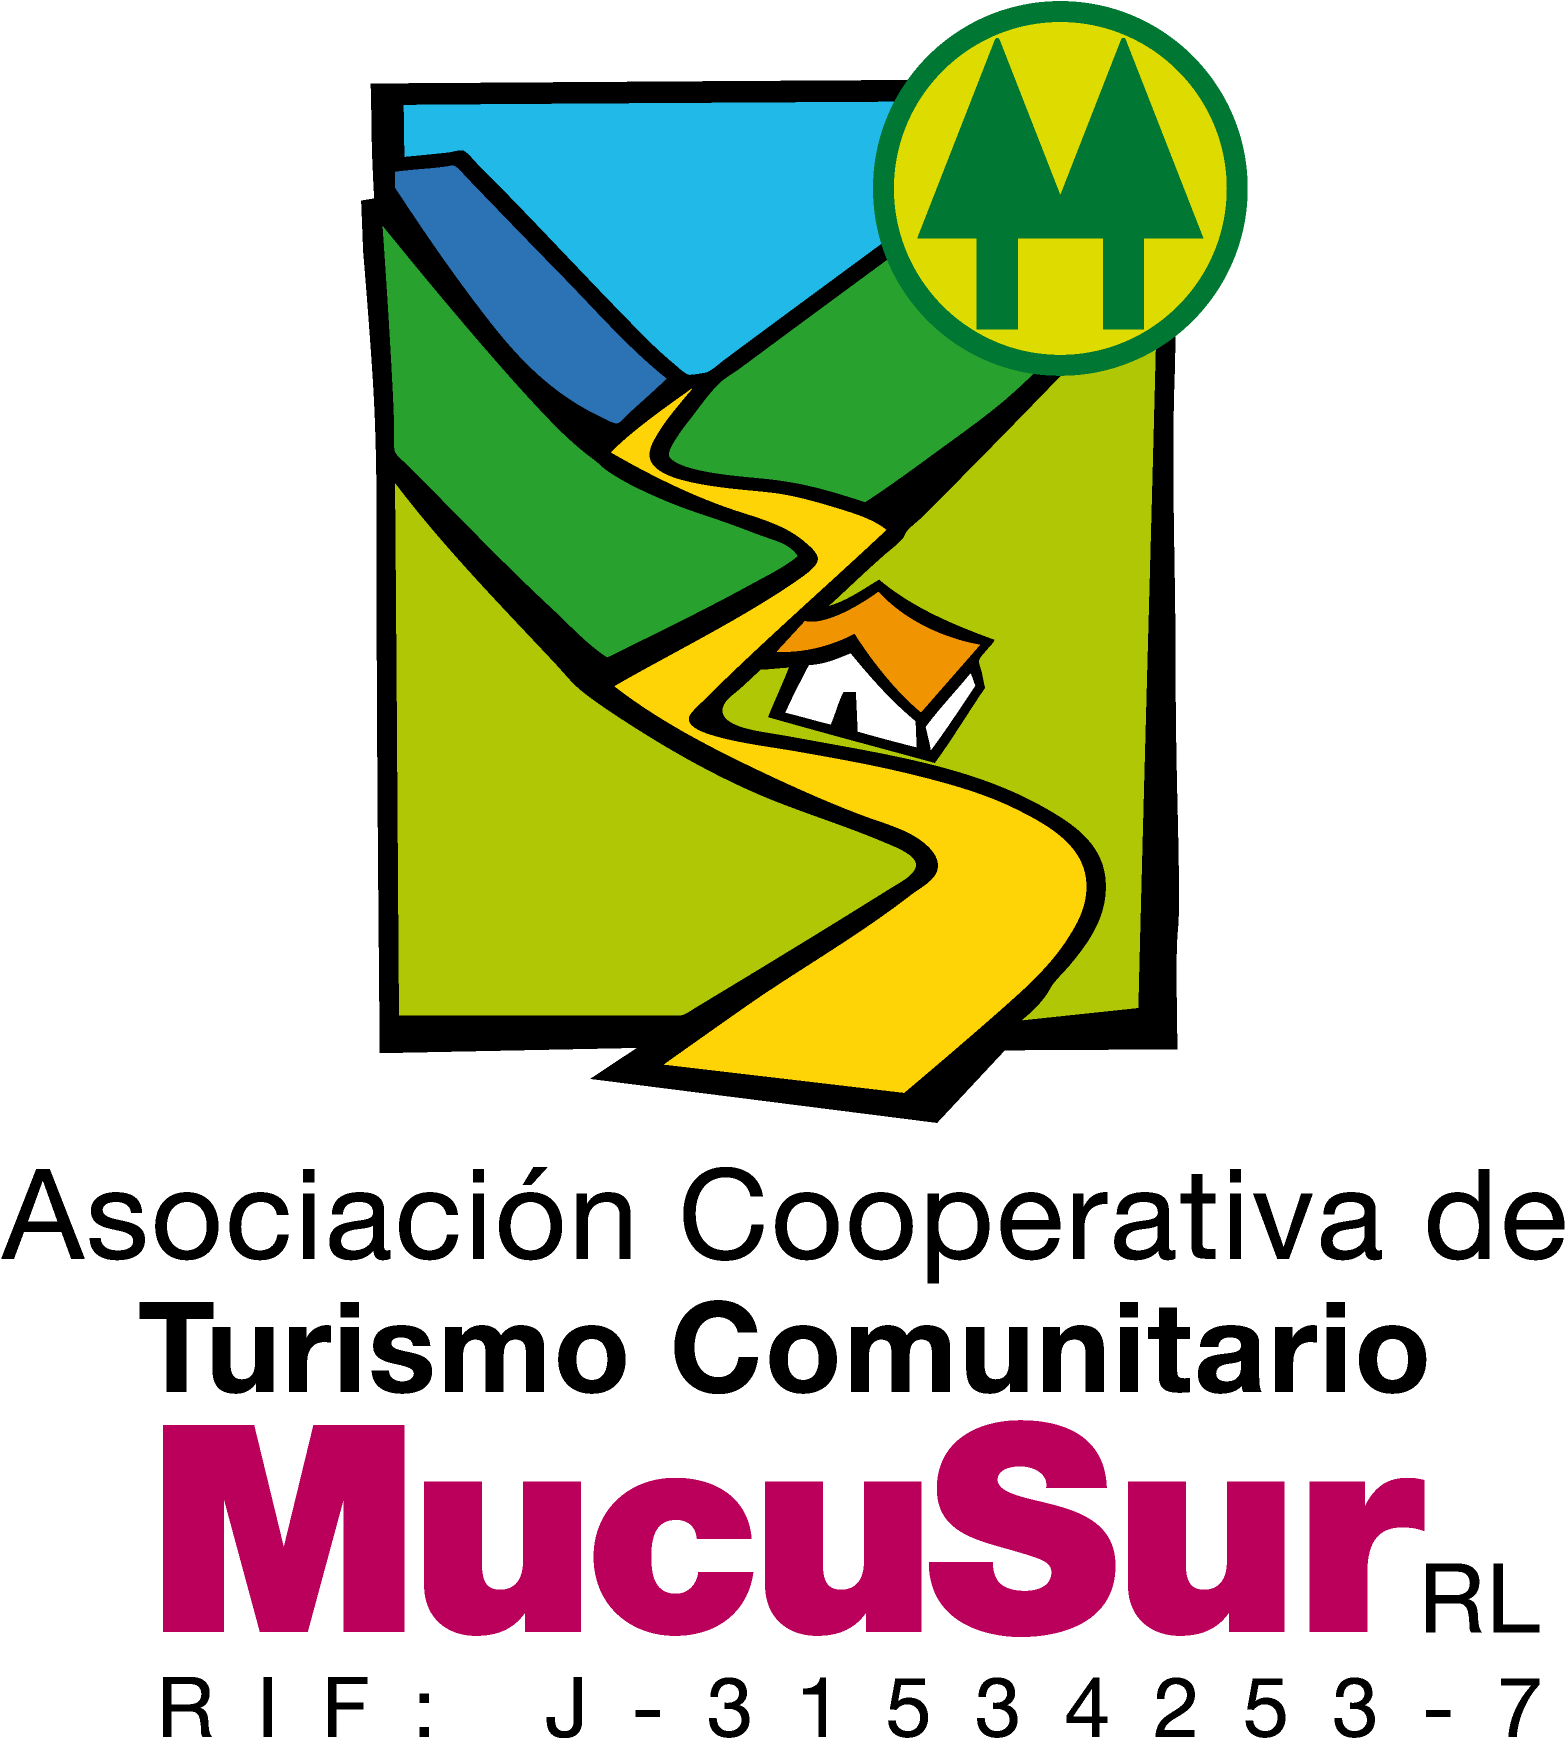 Logotipo De La Cooperativa Mucusur - Cooperative (1644x1816)